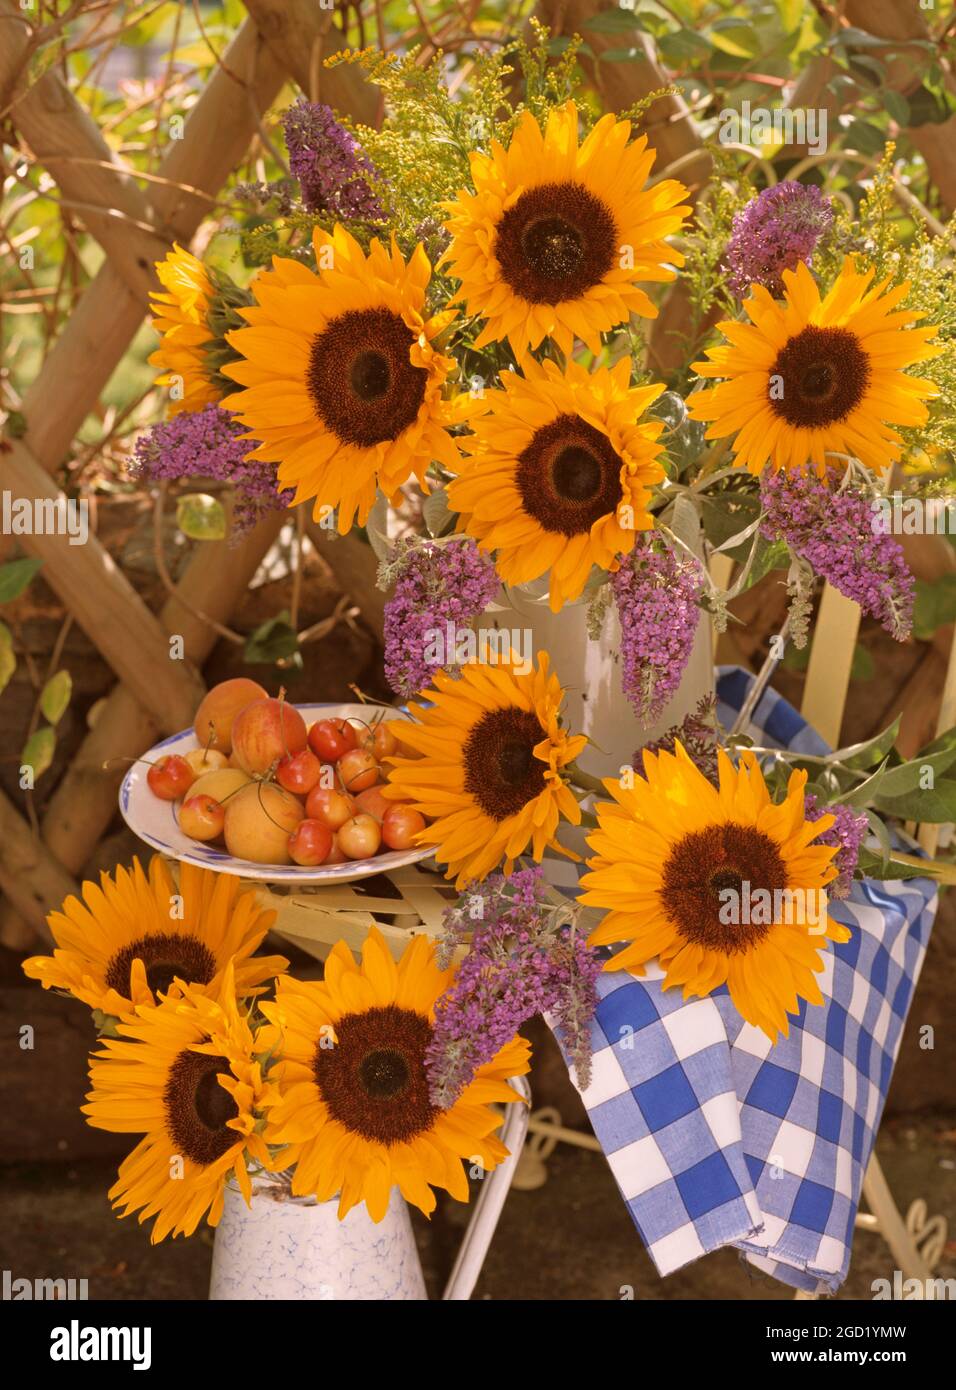 botanik, Sonnenblumen und Buddleia im Freien in Metallkannen auf einem Metallstuhl mit Kirschen, ZUSÄTZLICHE-RIGHTS-CLEARANCE-INFO-NOT-AVAILABLE Stockfoto